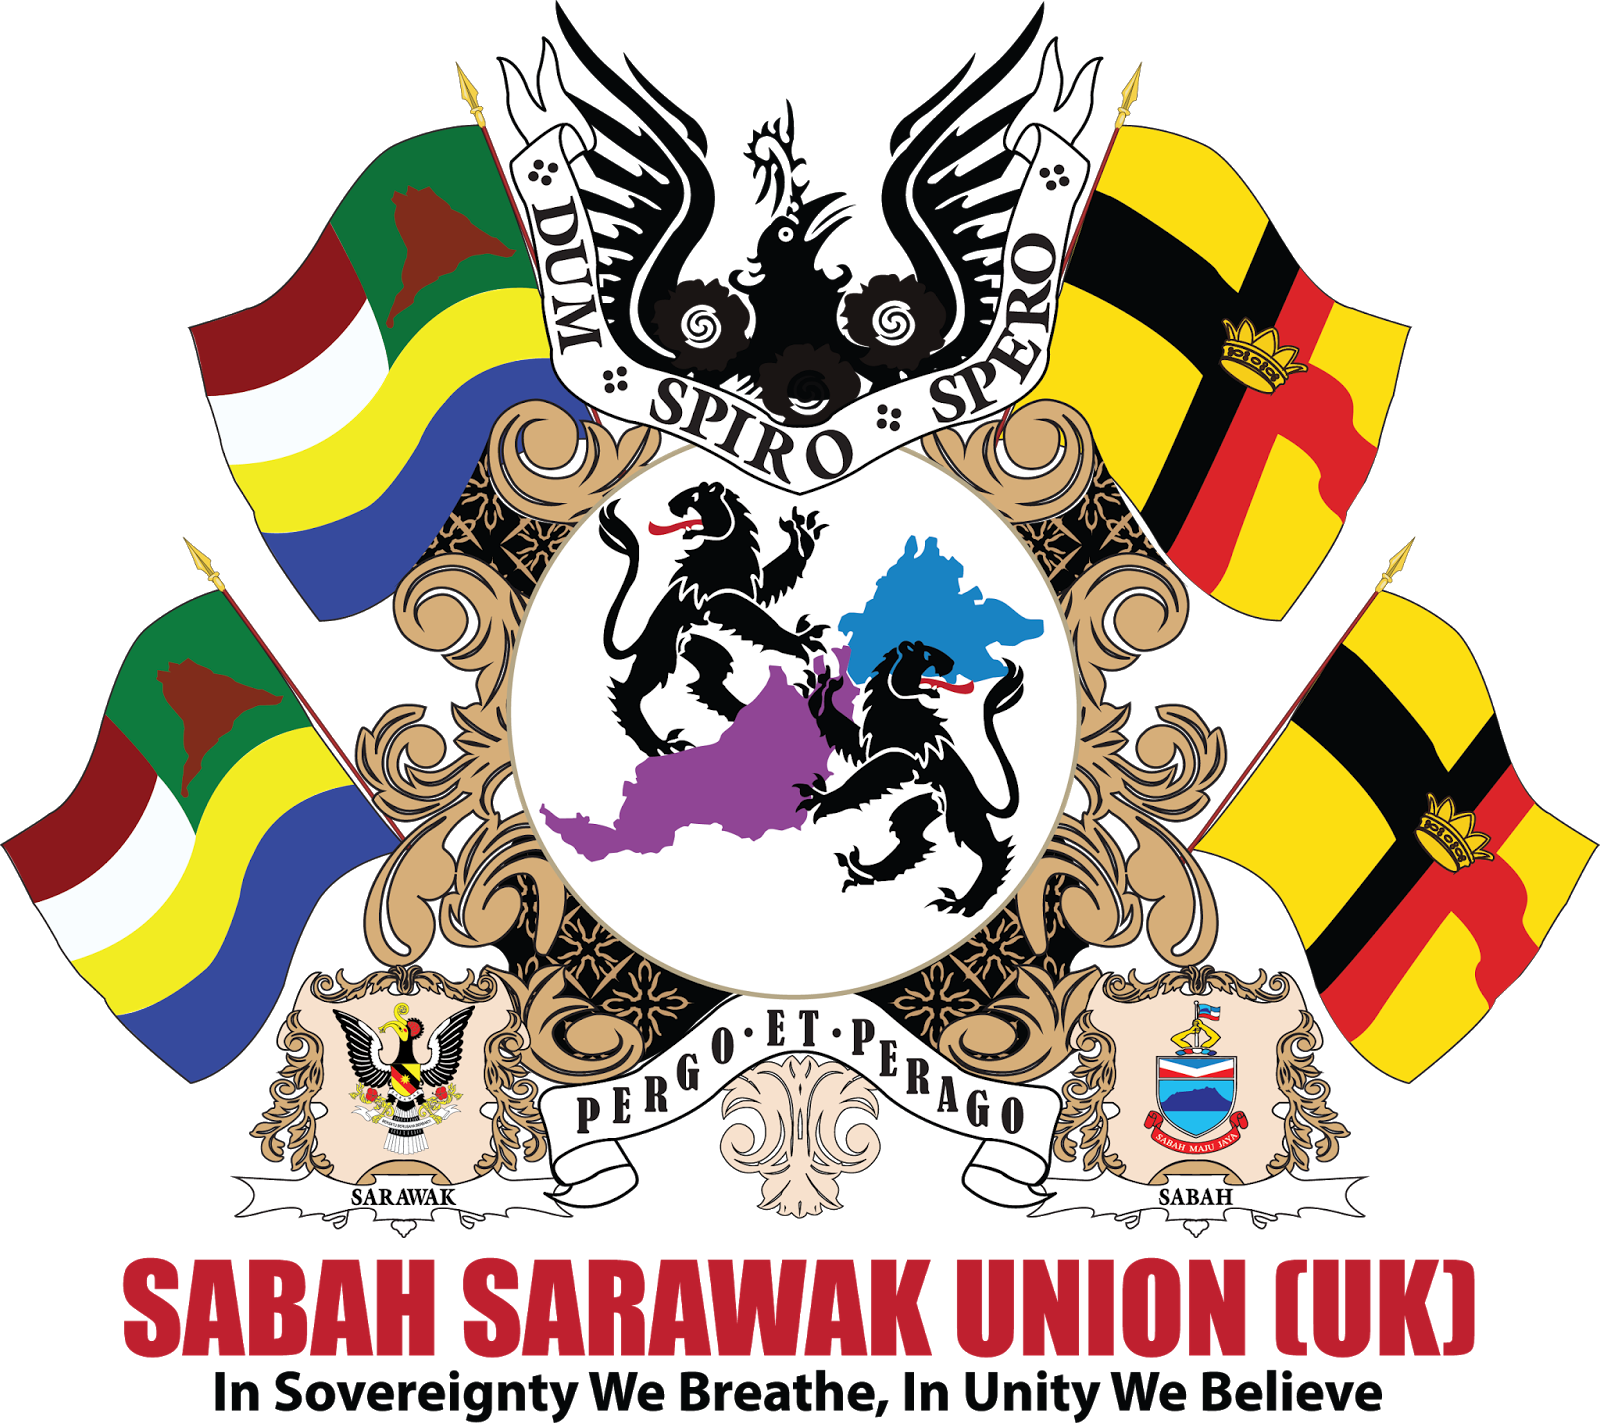 Sarawak utd vs sabah